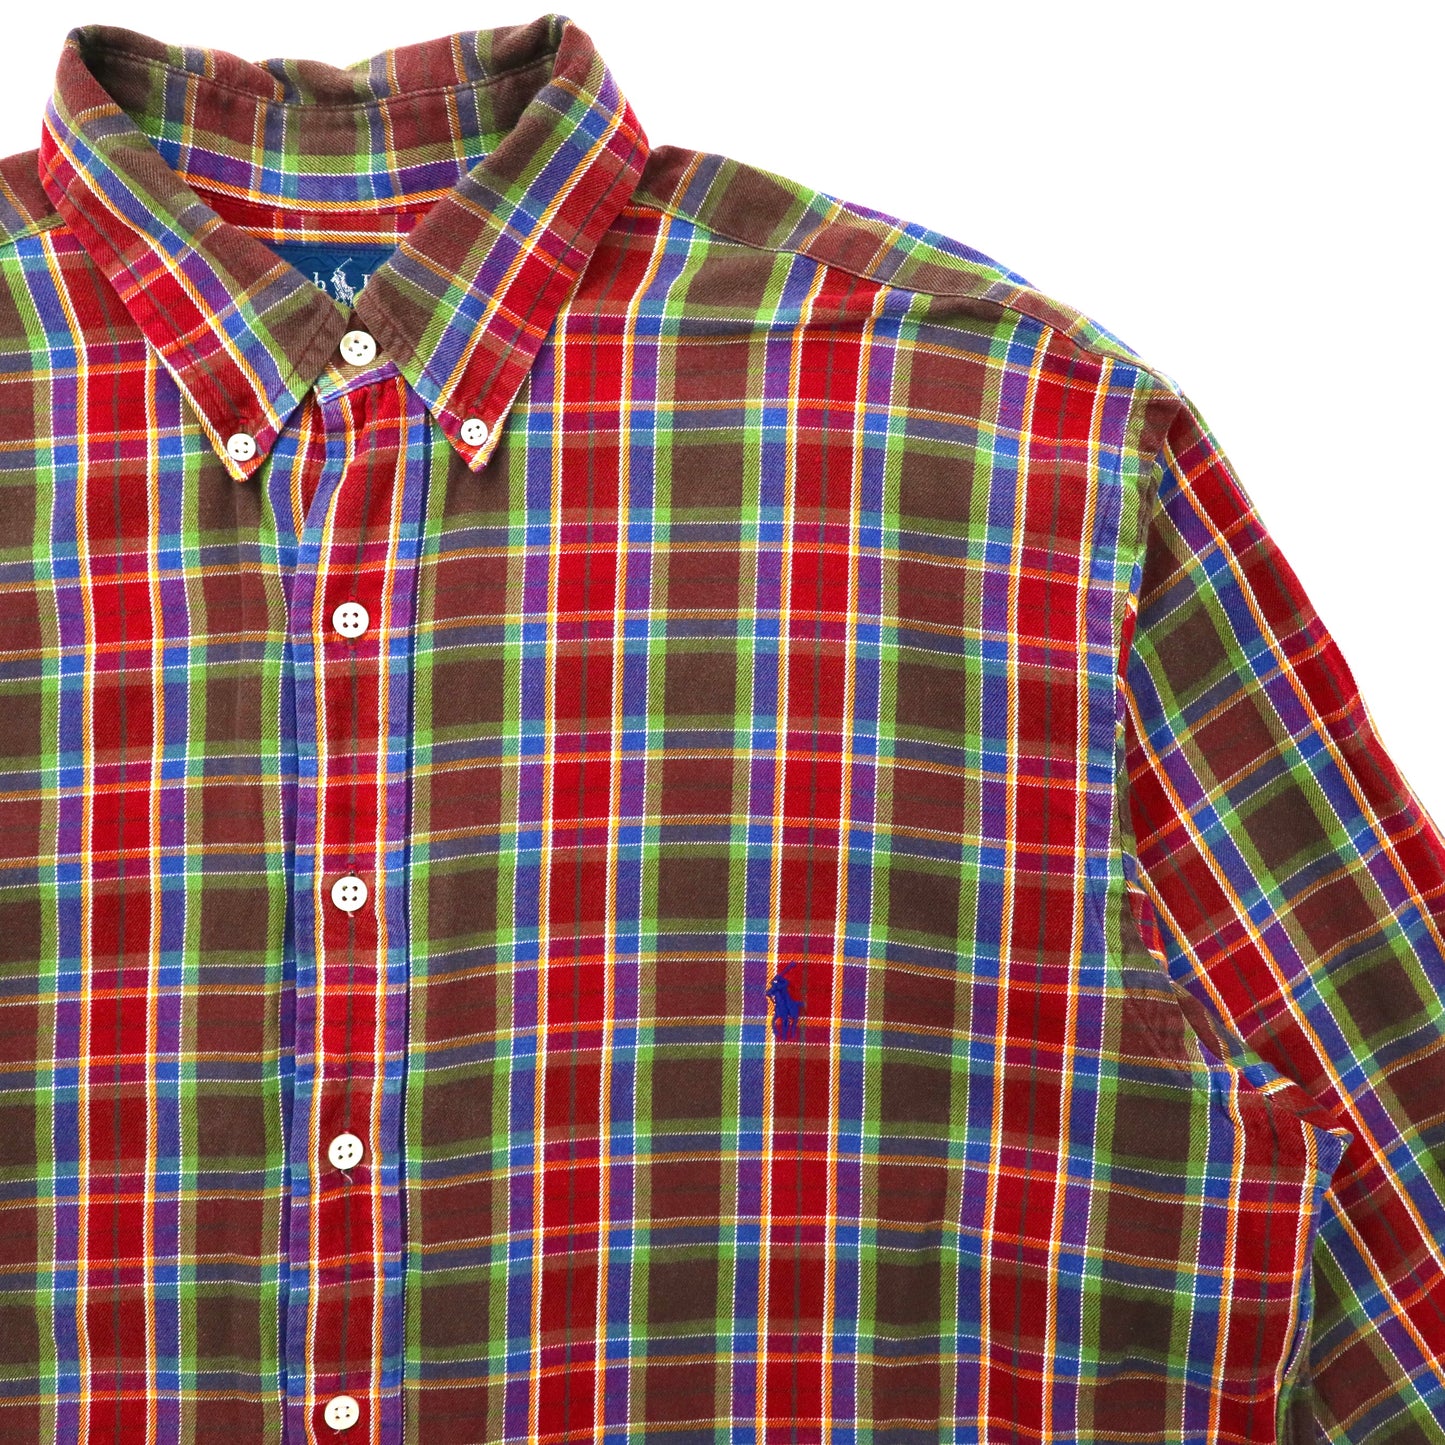 Ralph Lauren ビッグサイズ ボタンダウンシャツ LT レッド チェック コットン ワンポイントロゴ刺繍